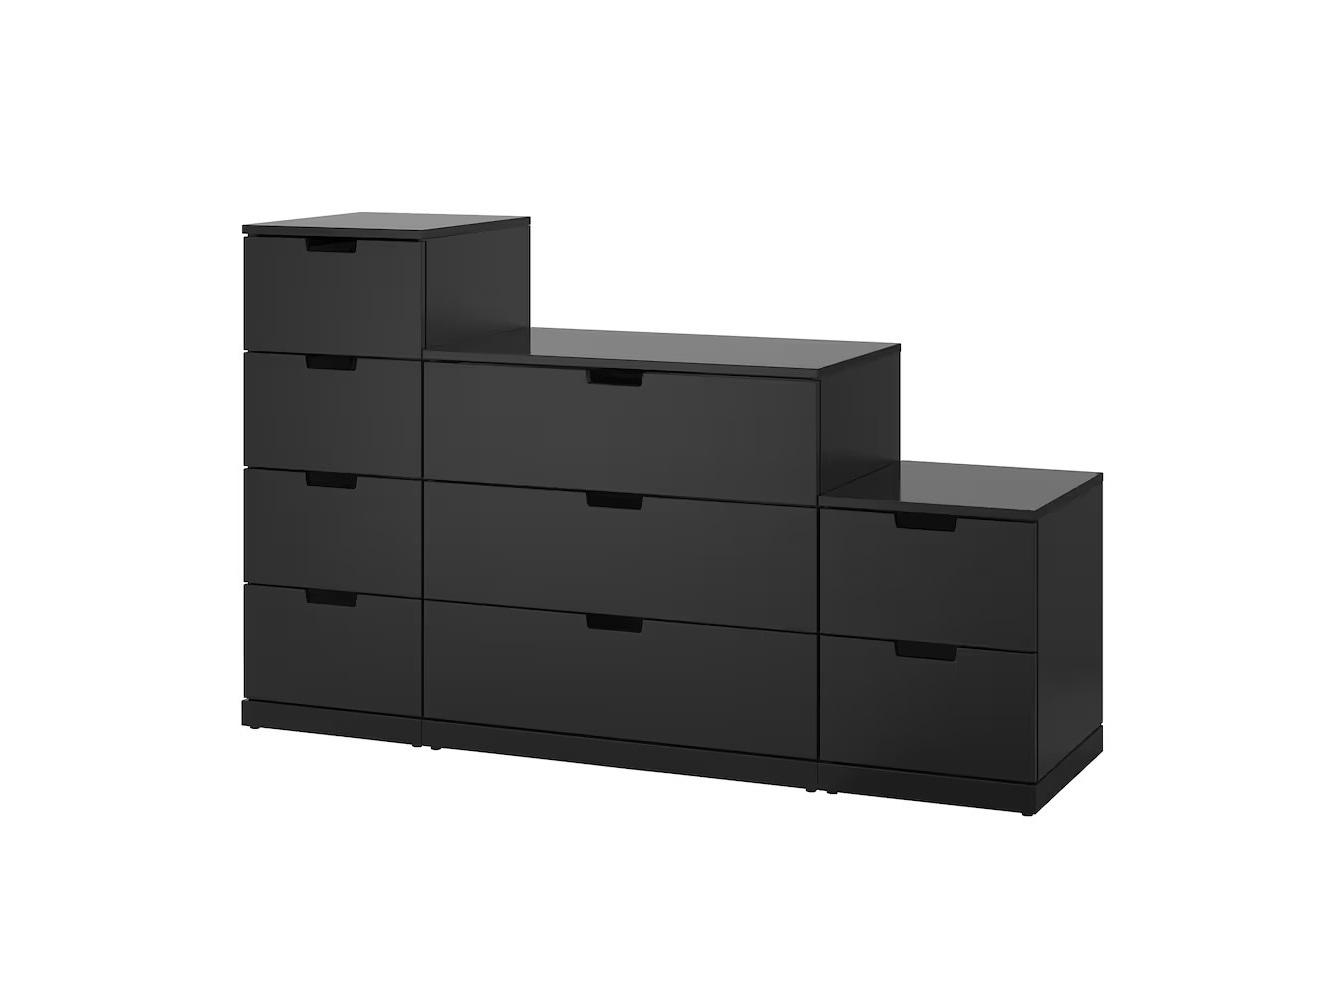 Комод Нордли 42 black ИКЕА (IKEA) изображение товара